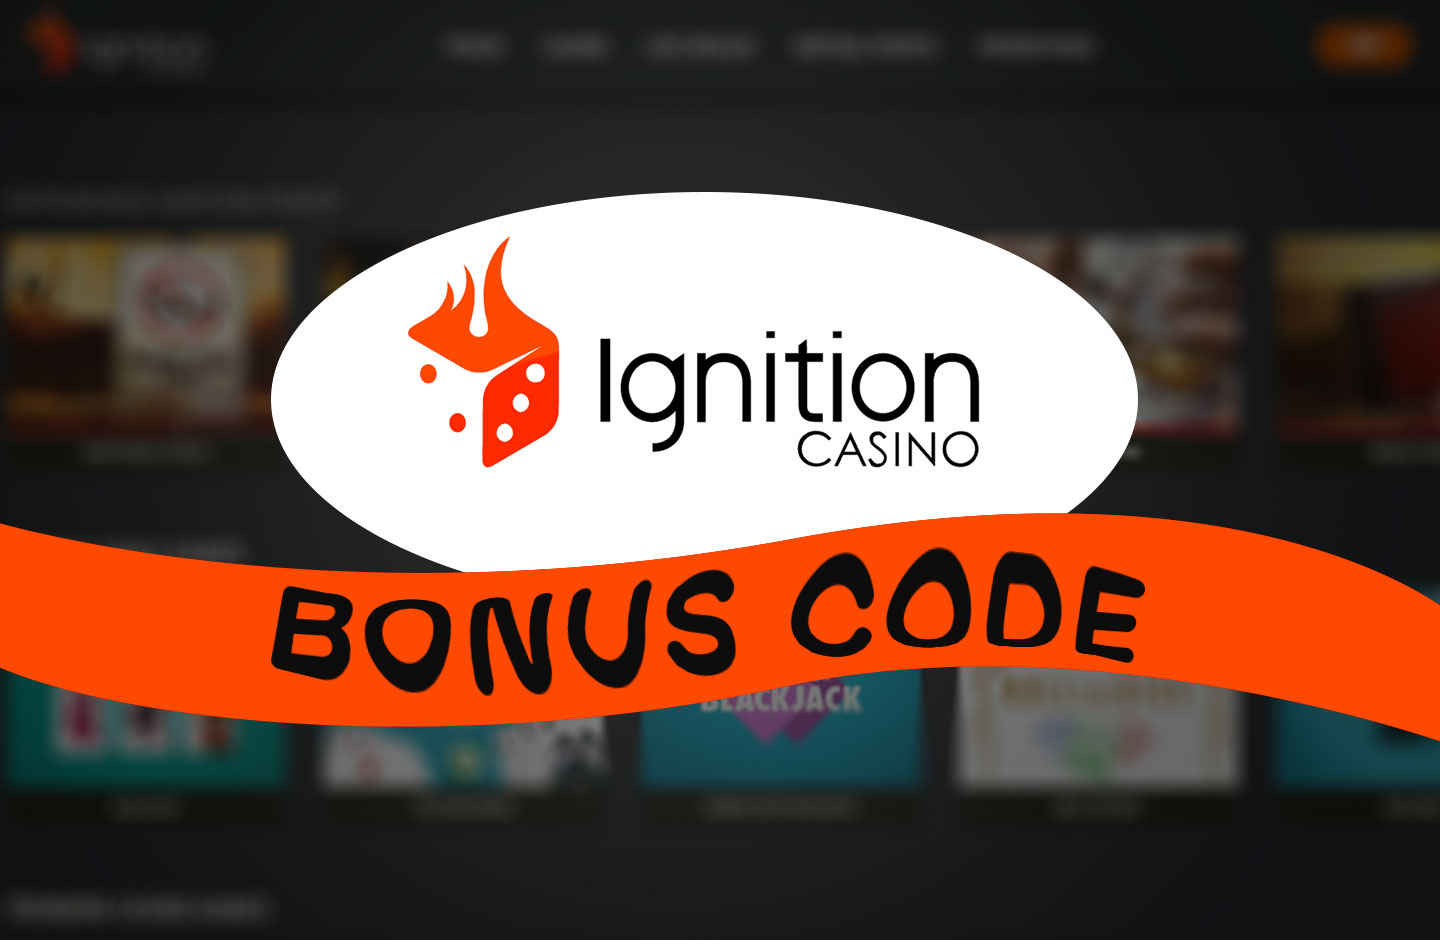 ignition casino bonus code 2019